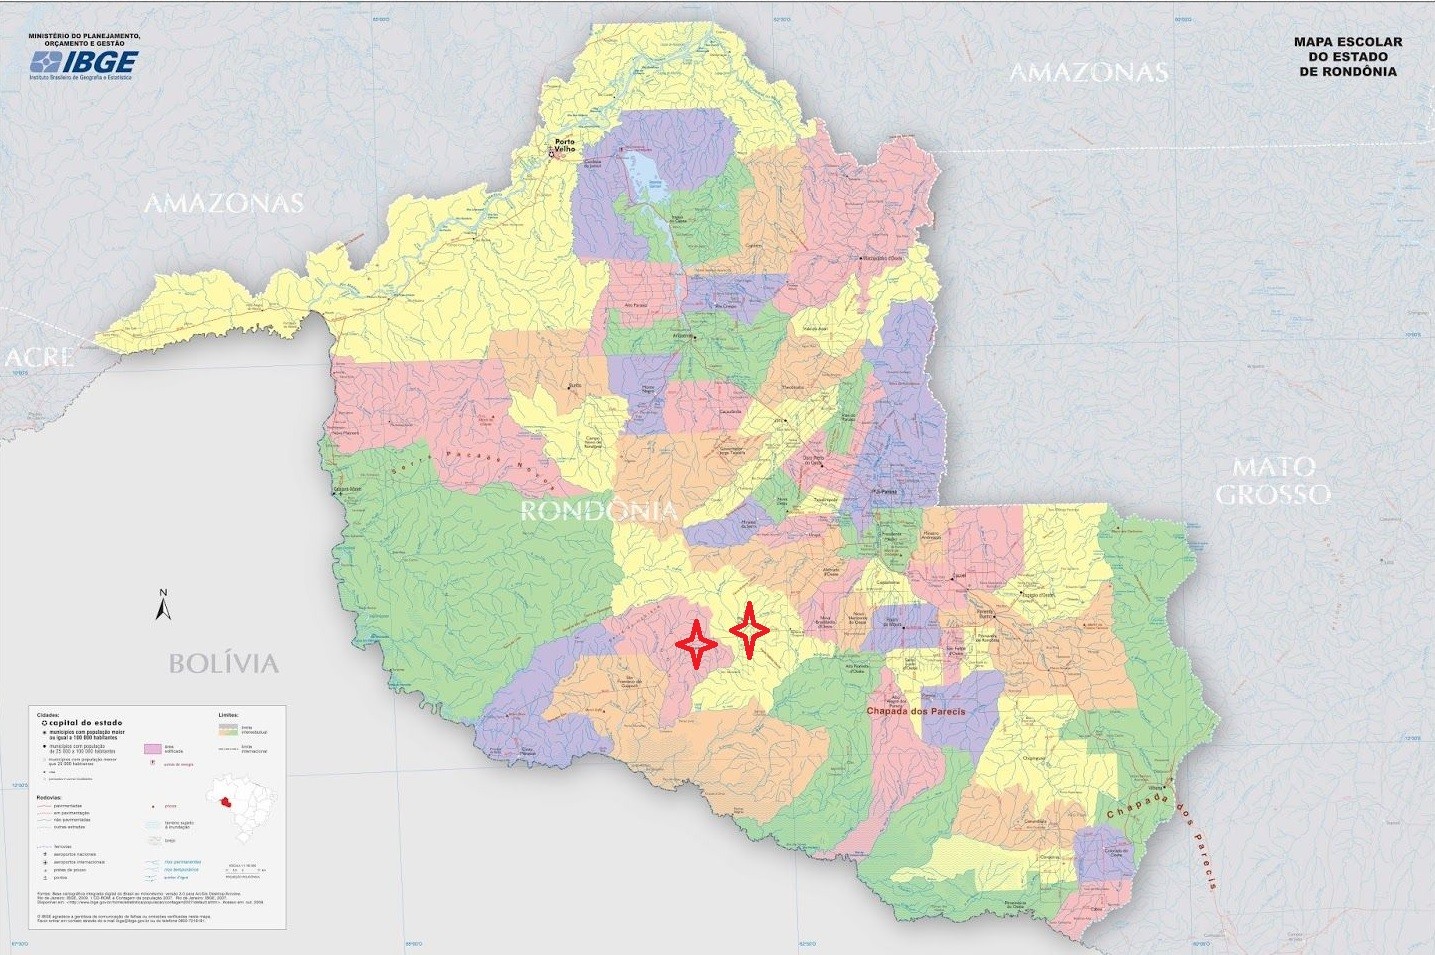 mapa-de-rondonia-pode-ser-modificado-com-revisao-de-limites-entre-dois-municipios;-entenda